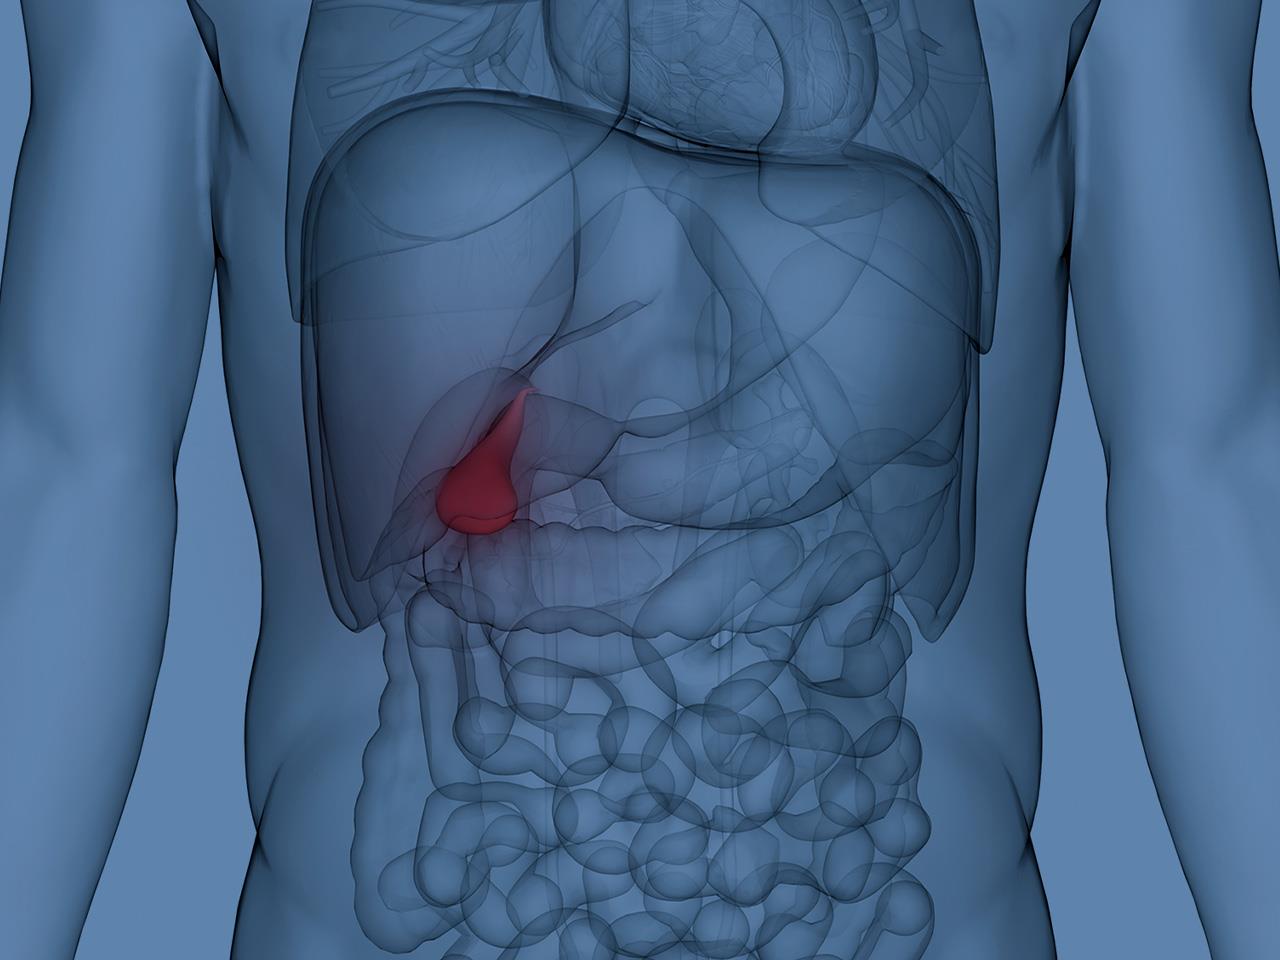 Inflamed Gallbladder